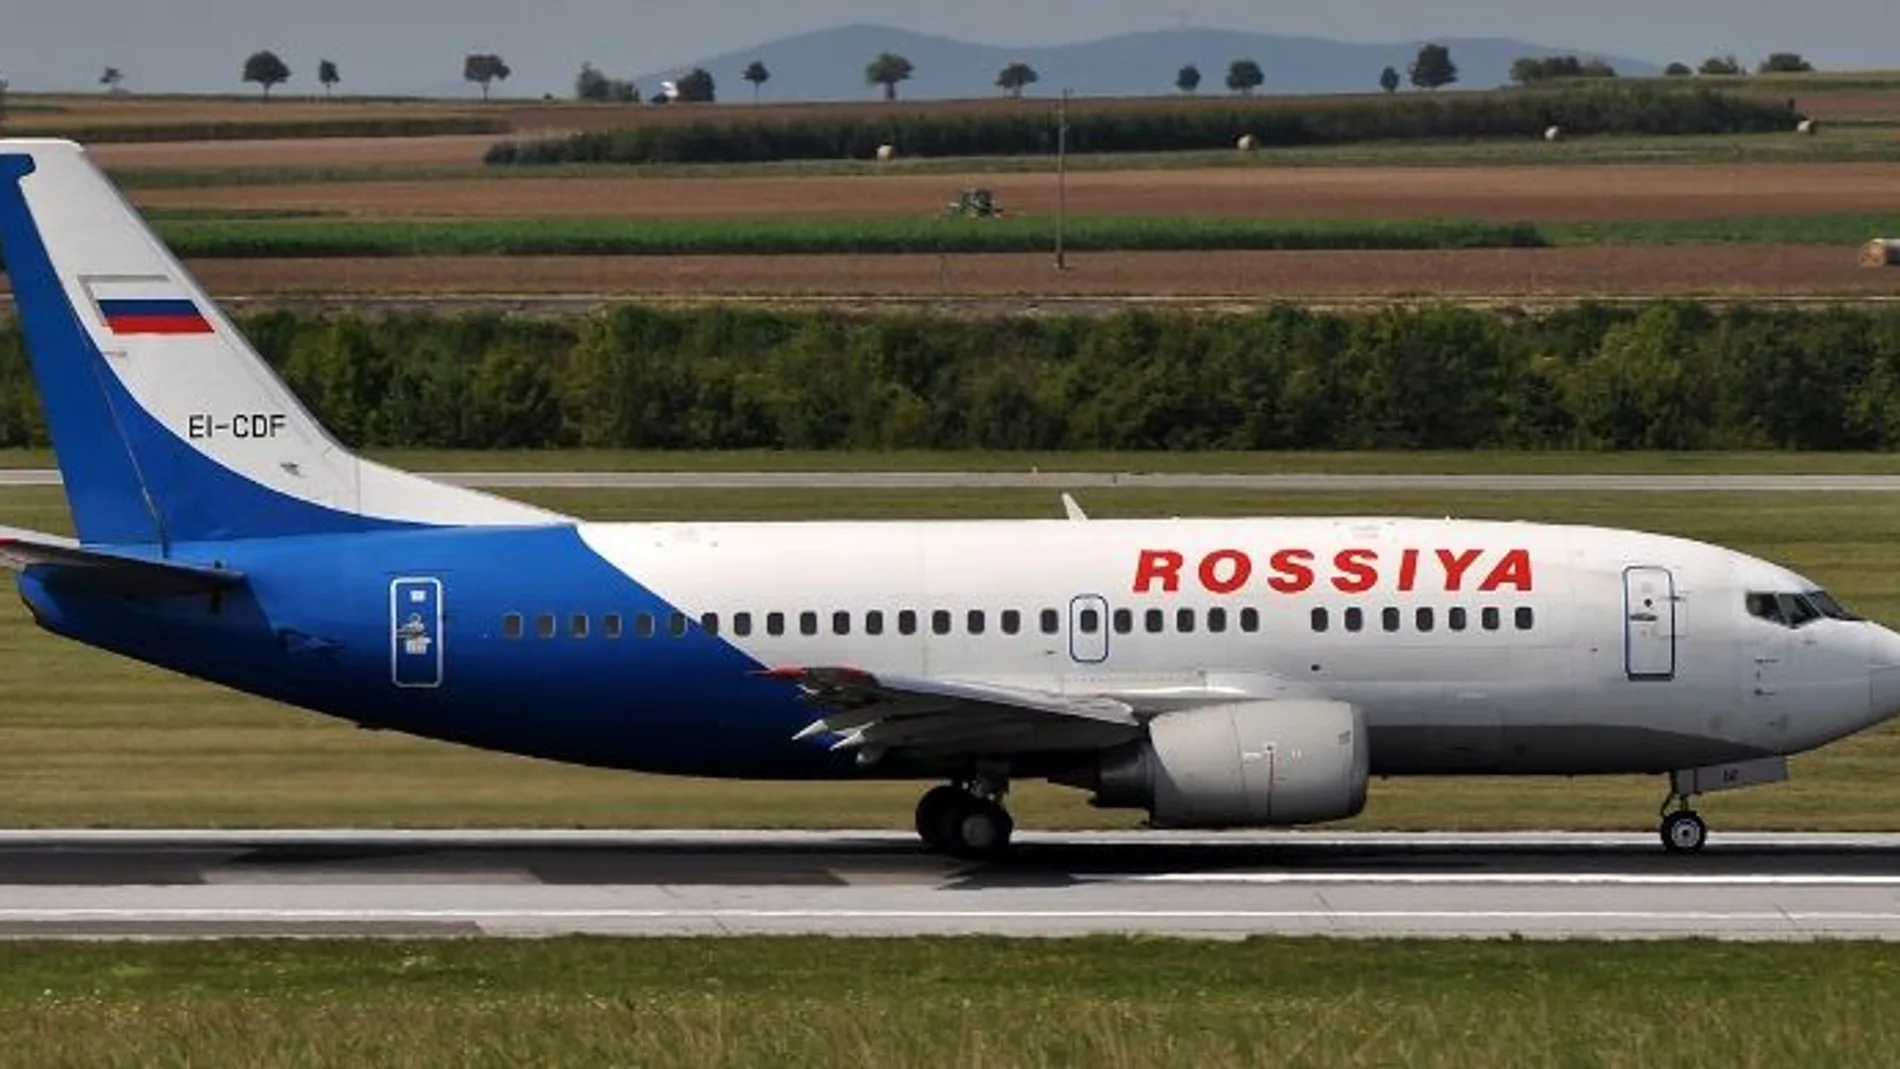 El avión,operado por la compañía estatal rusa Rossiya Airlines, contaba con 189 pasajeros